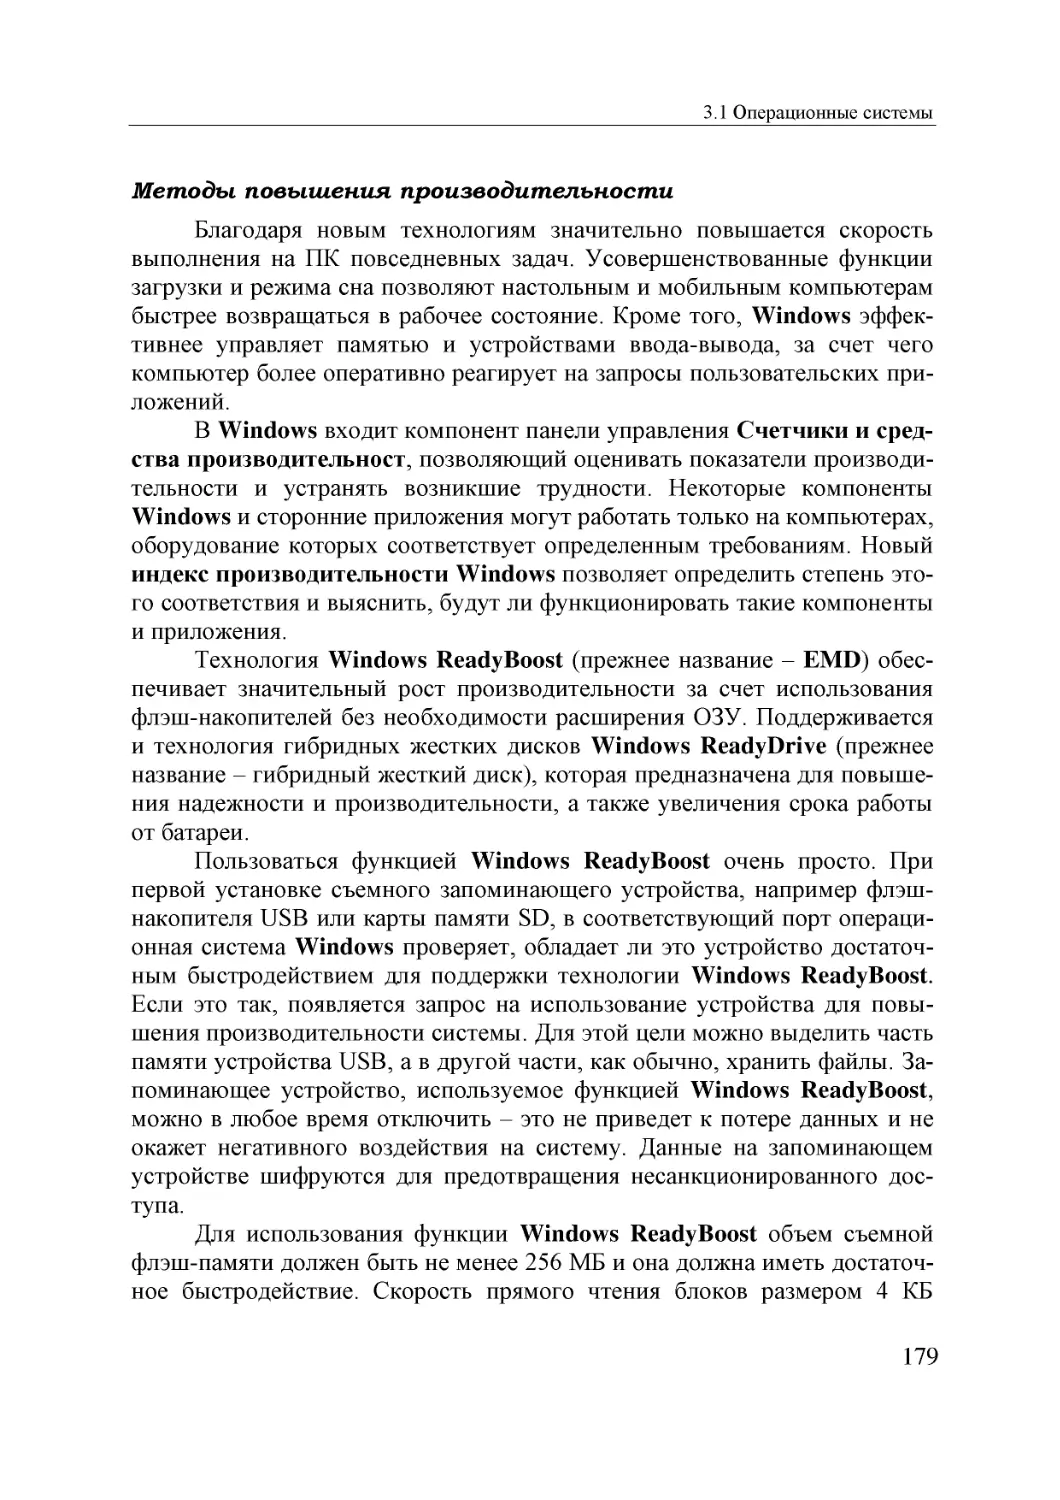 Informatika_Uchebnik_dlya_vuzov_2010 179